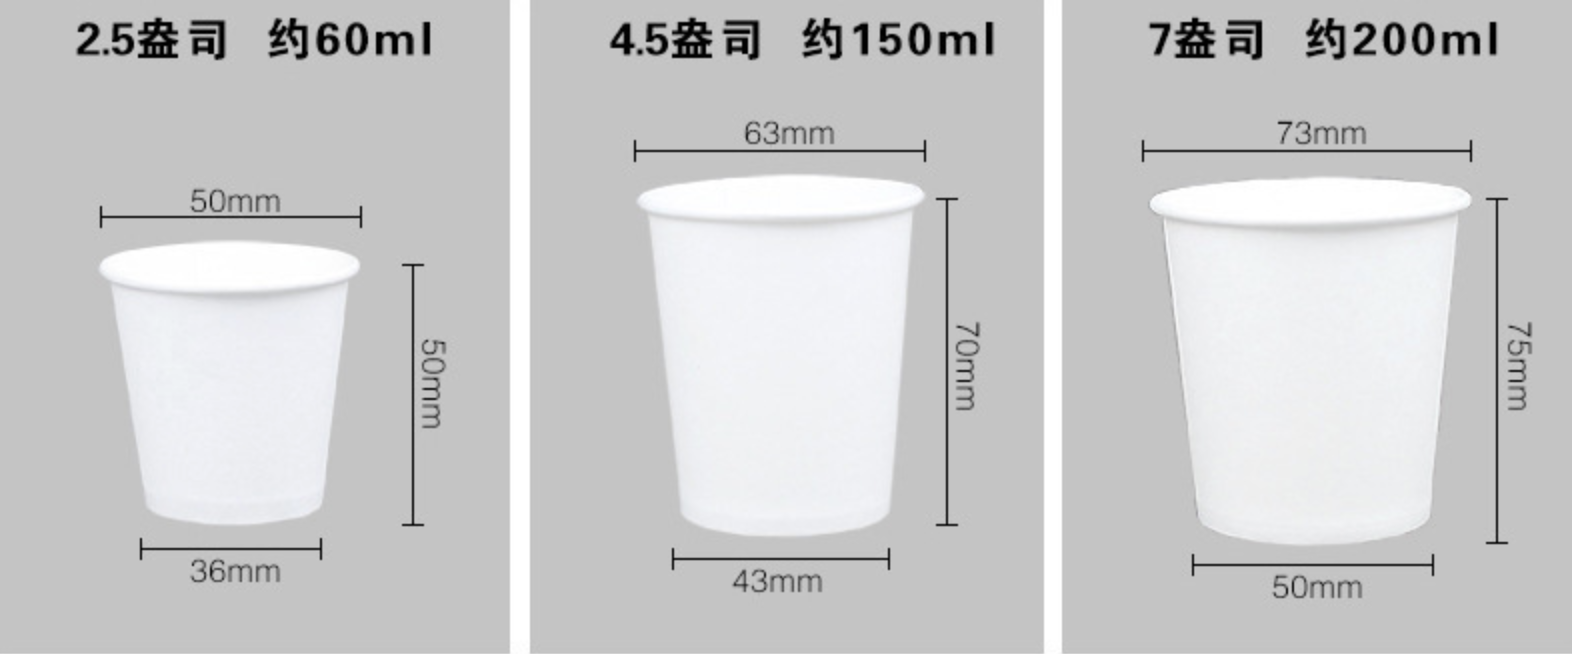 白色紙杯/ 中空杯(图3)